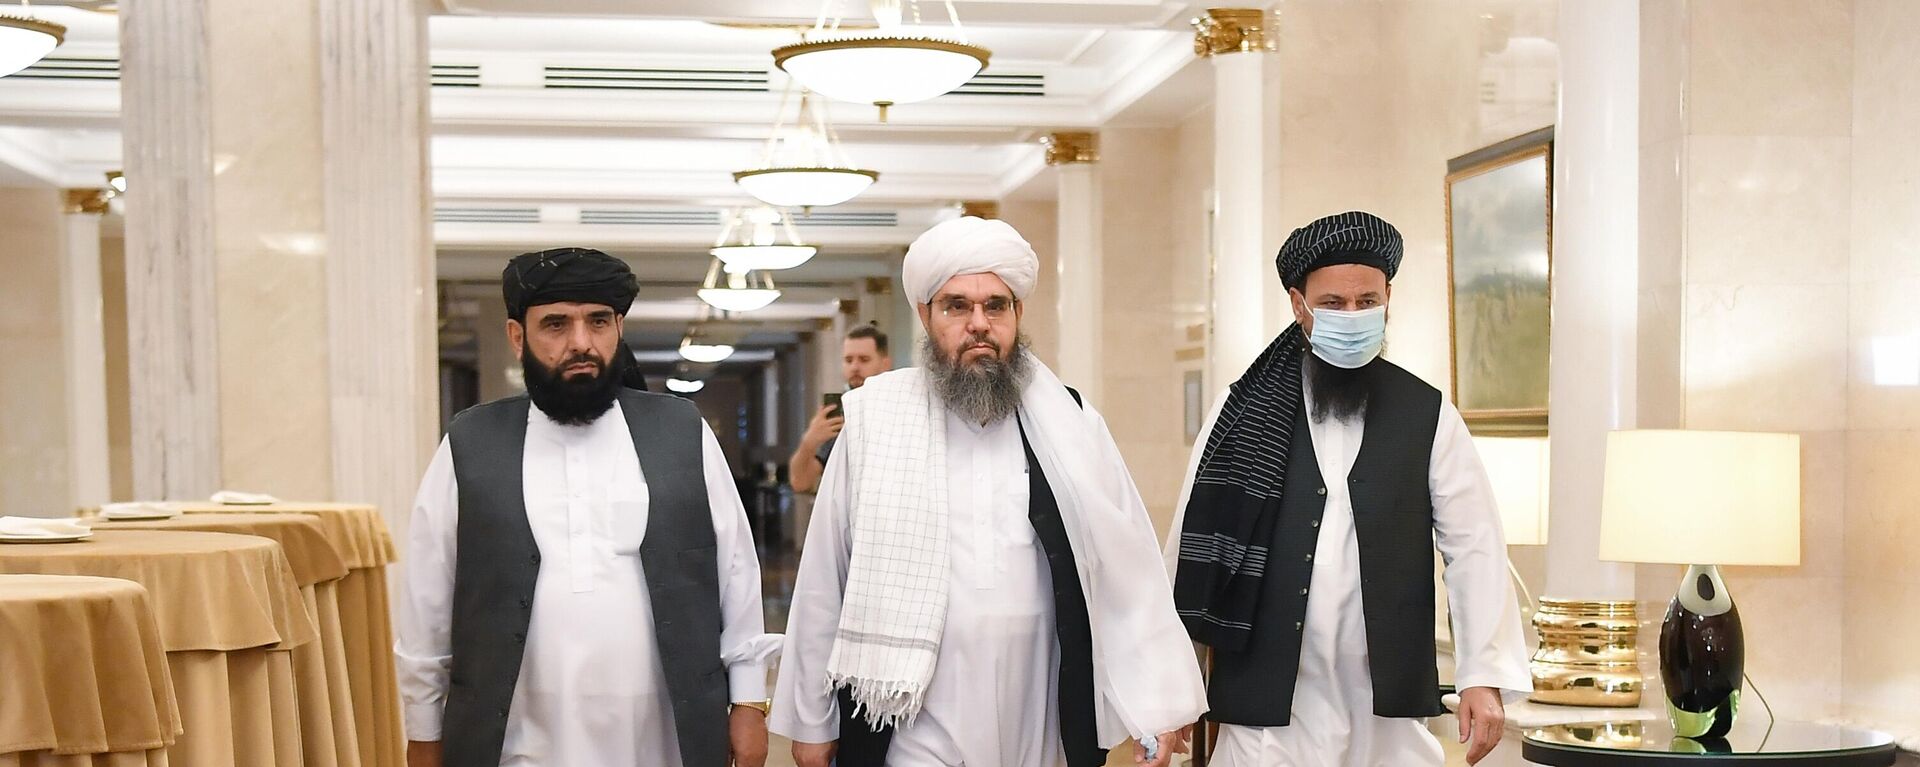 Делегация политического офиса движения Талибан (запрещено в РФ) в Москве - Sputnik Таджикистан, 1920, 08.09.2021